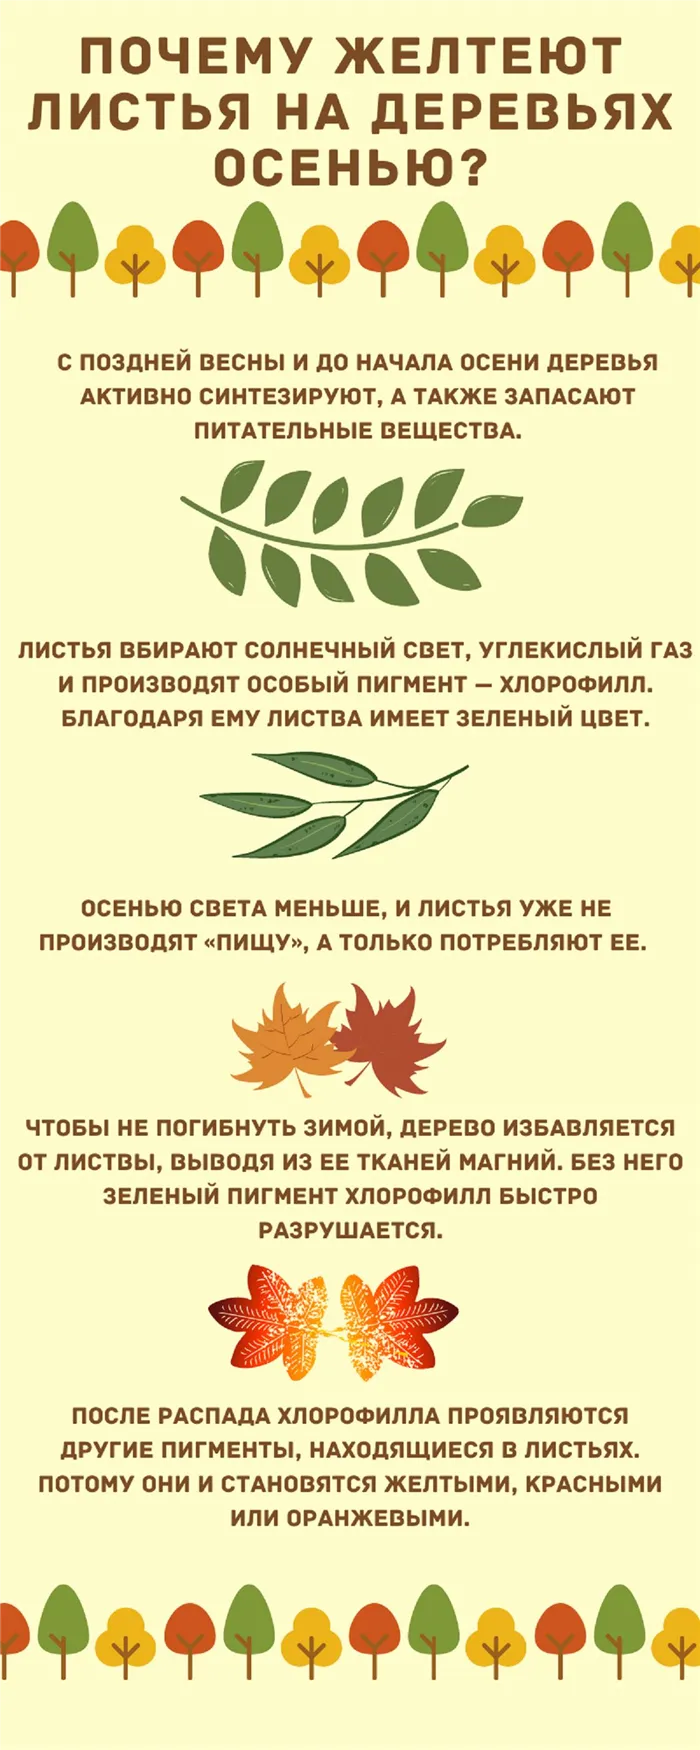 Инфографика, объясняющая, почему желтеют листья.